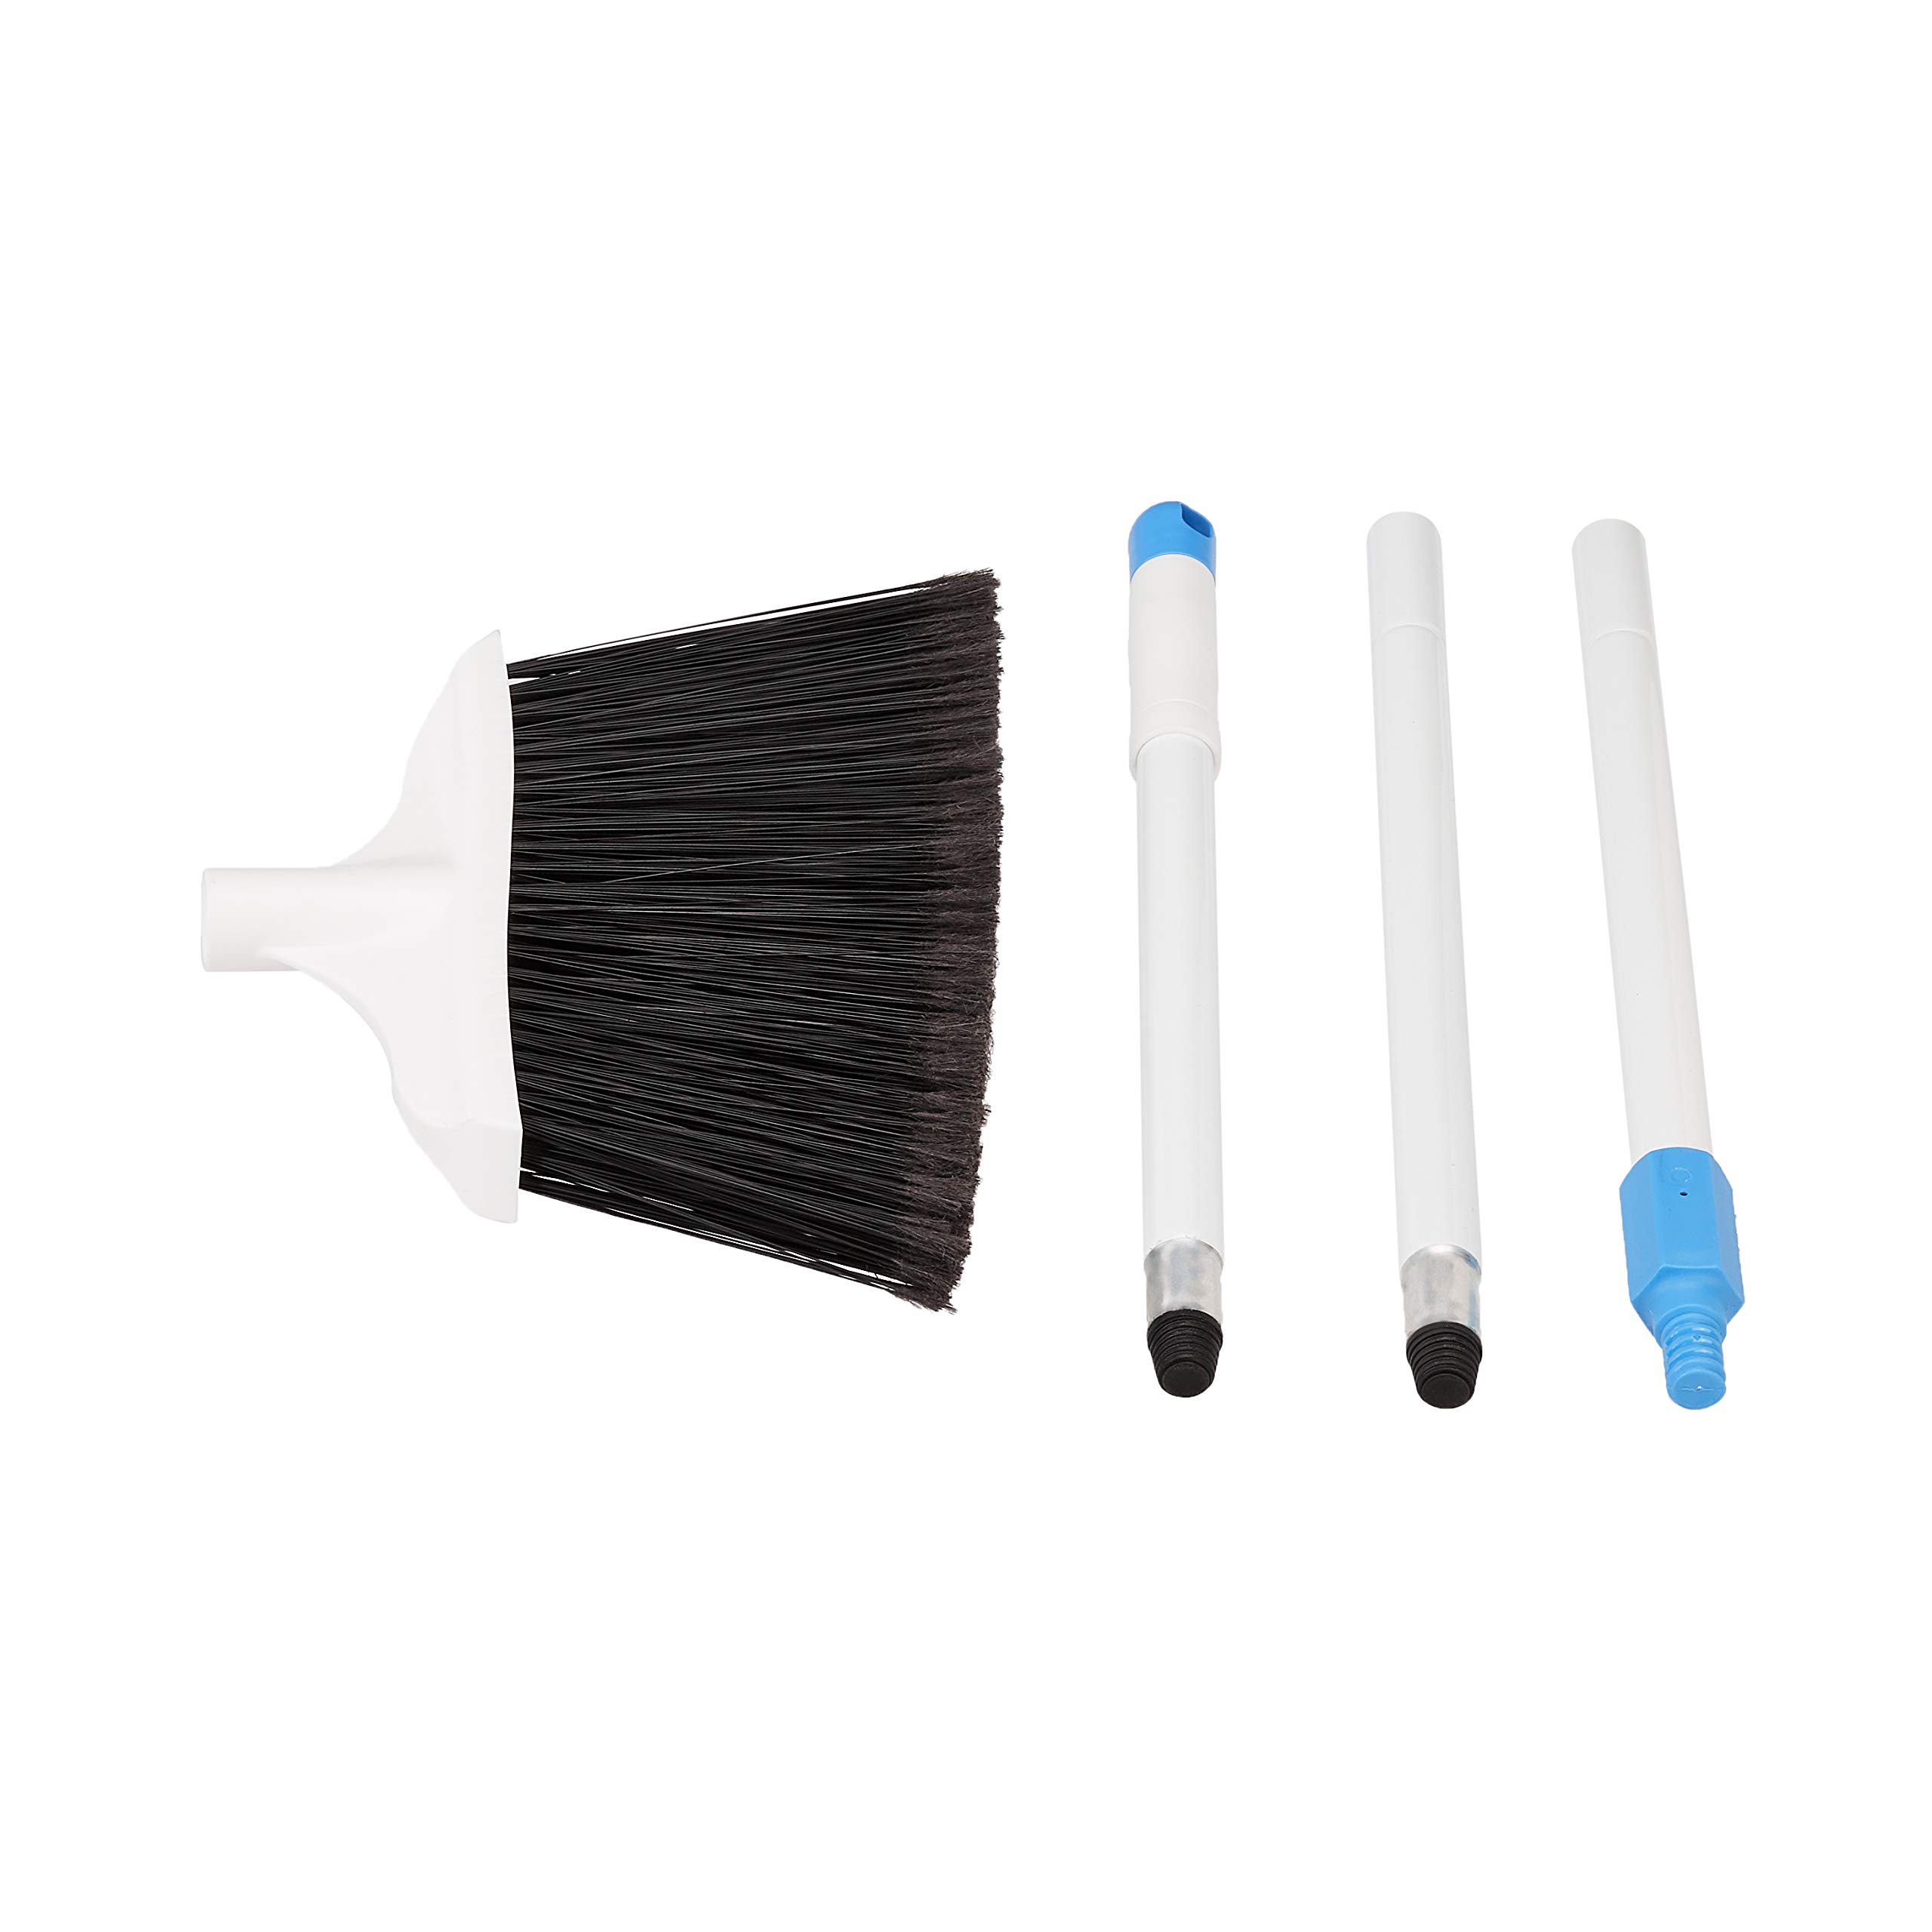 Amazon Basics Heavy-Duty Broom, Blue and White